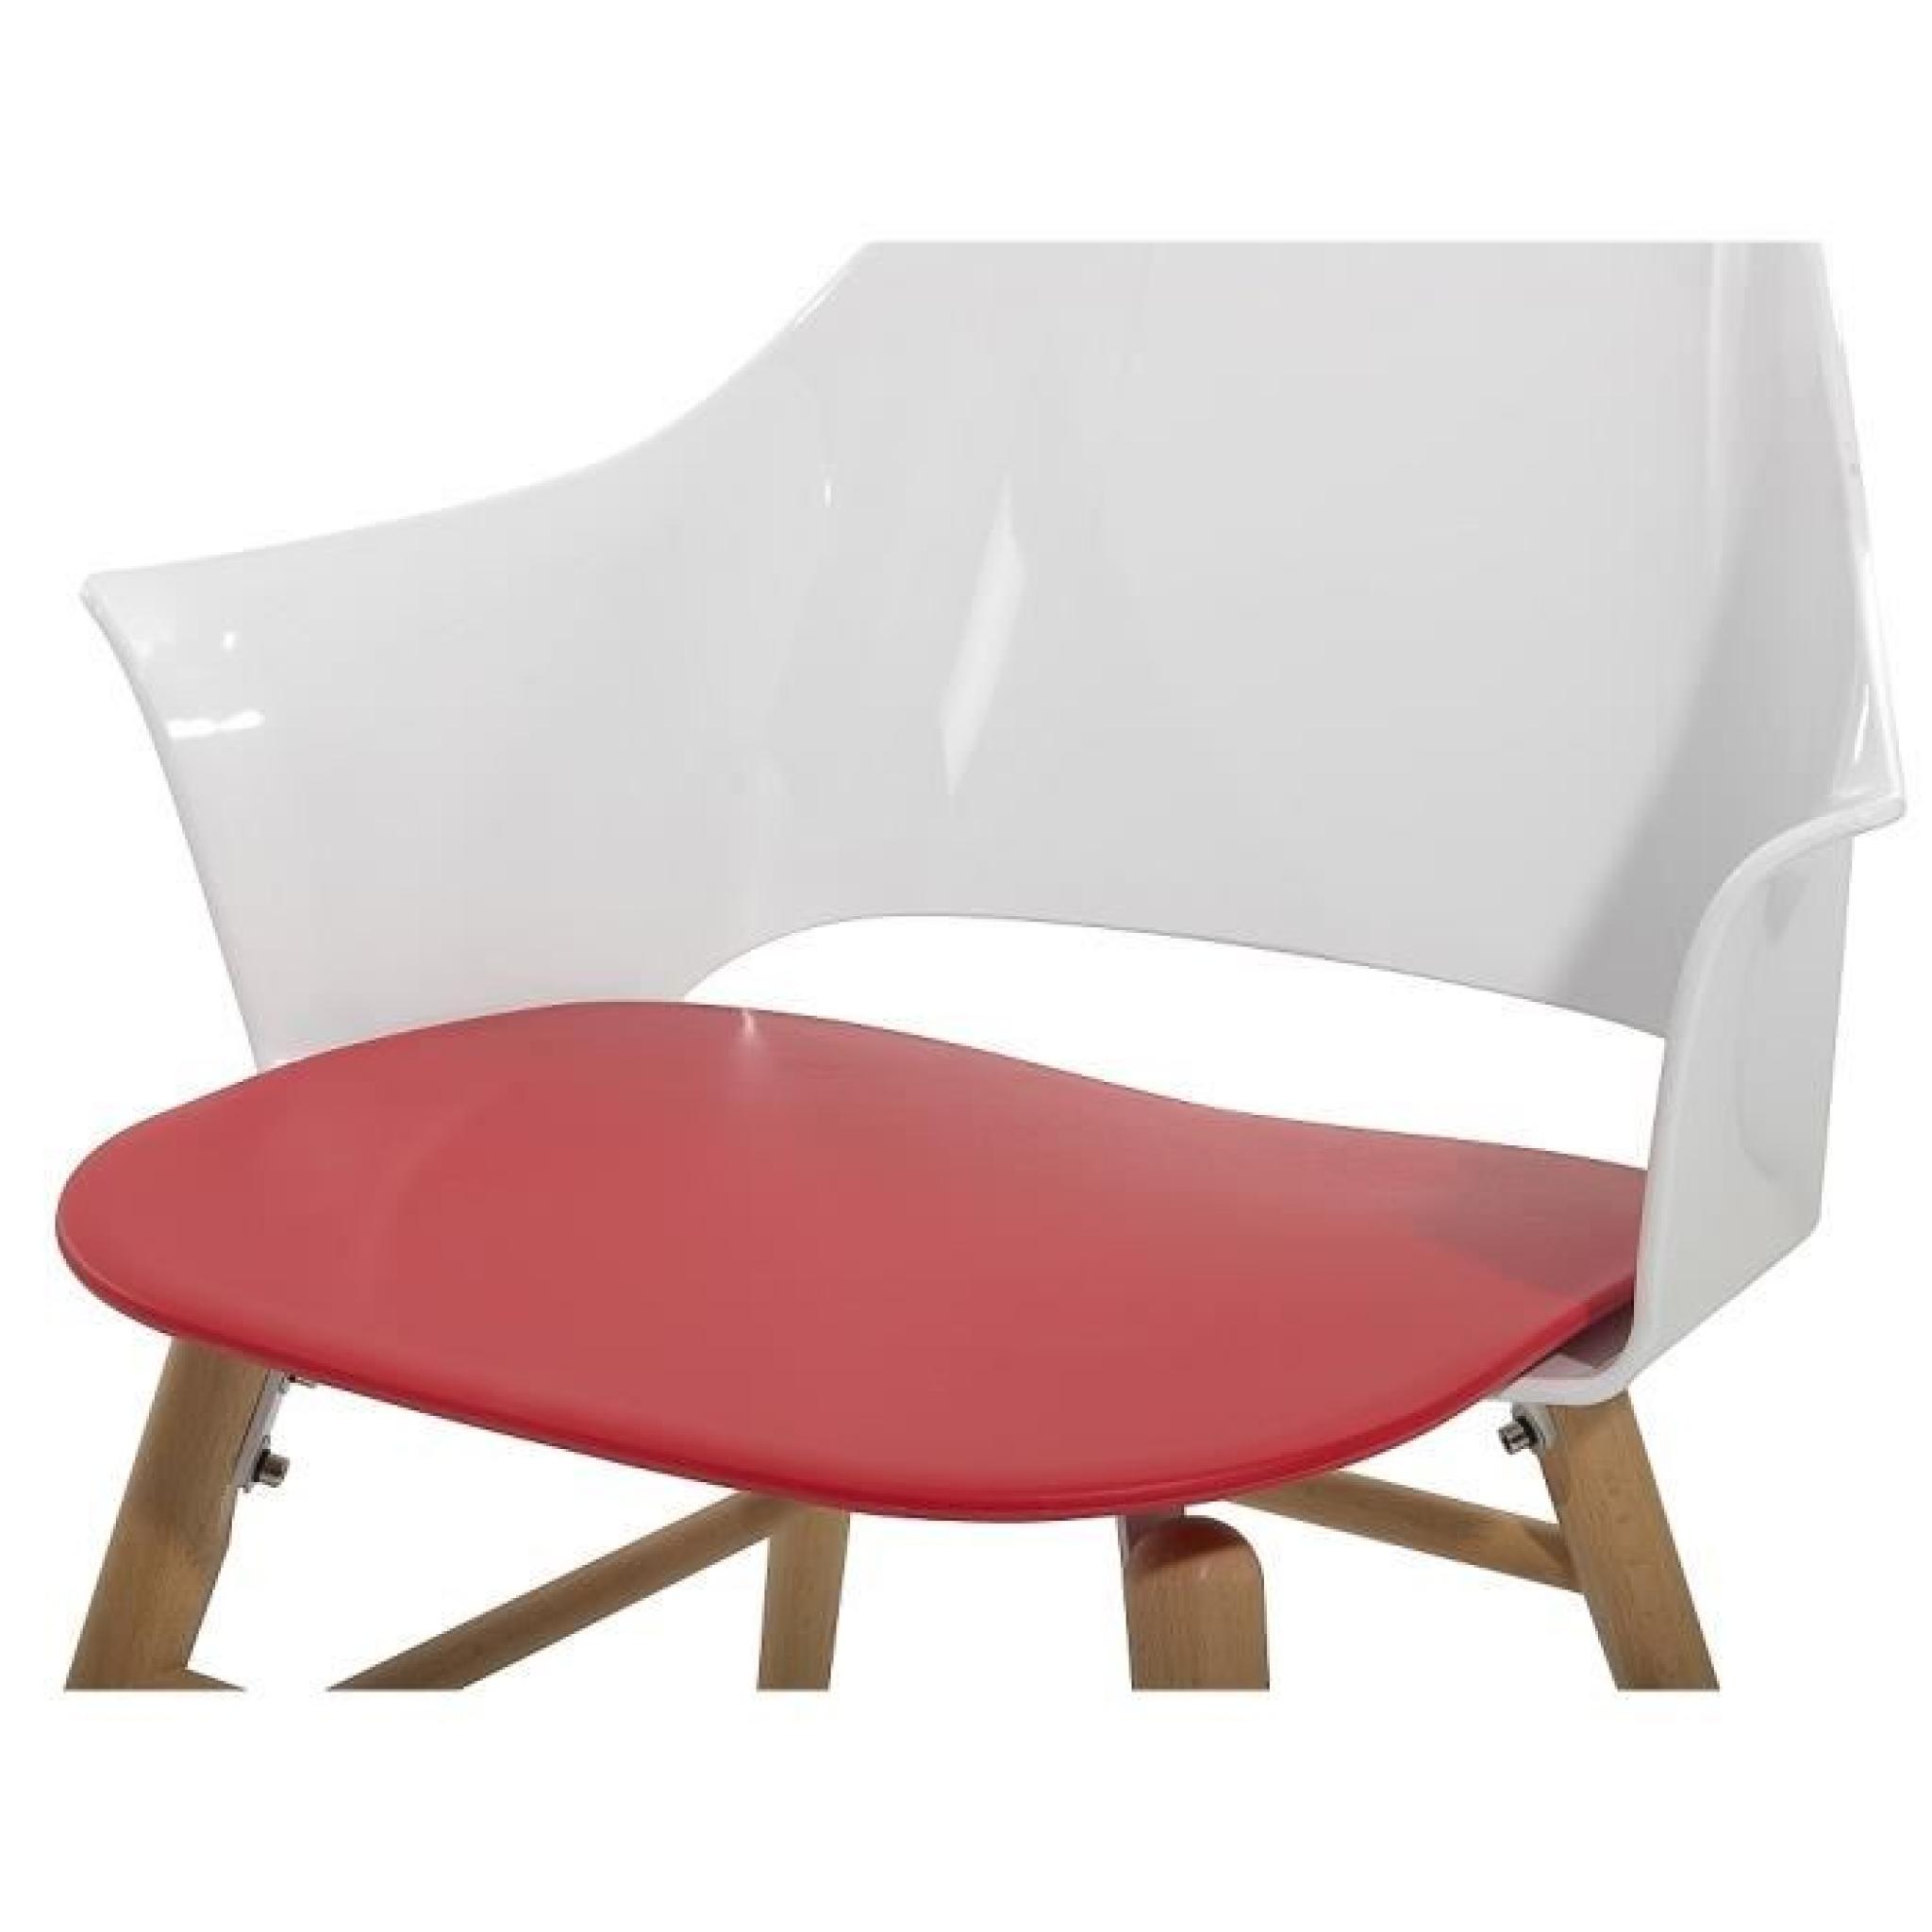 Chaise design - siège en plastique blanc / rouge - Boston pas cher